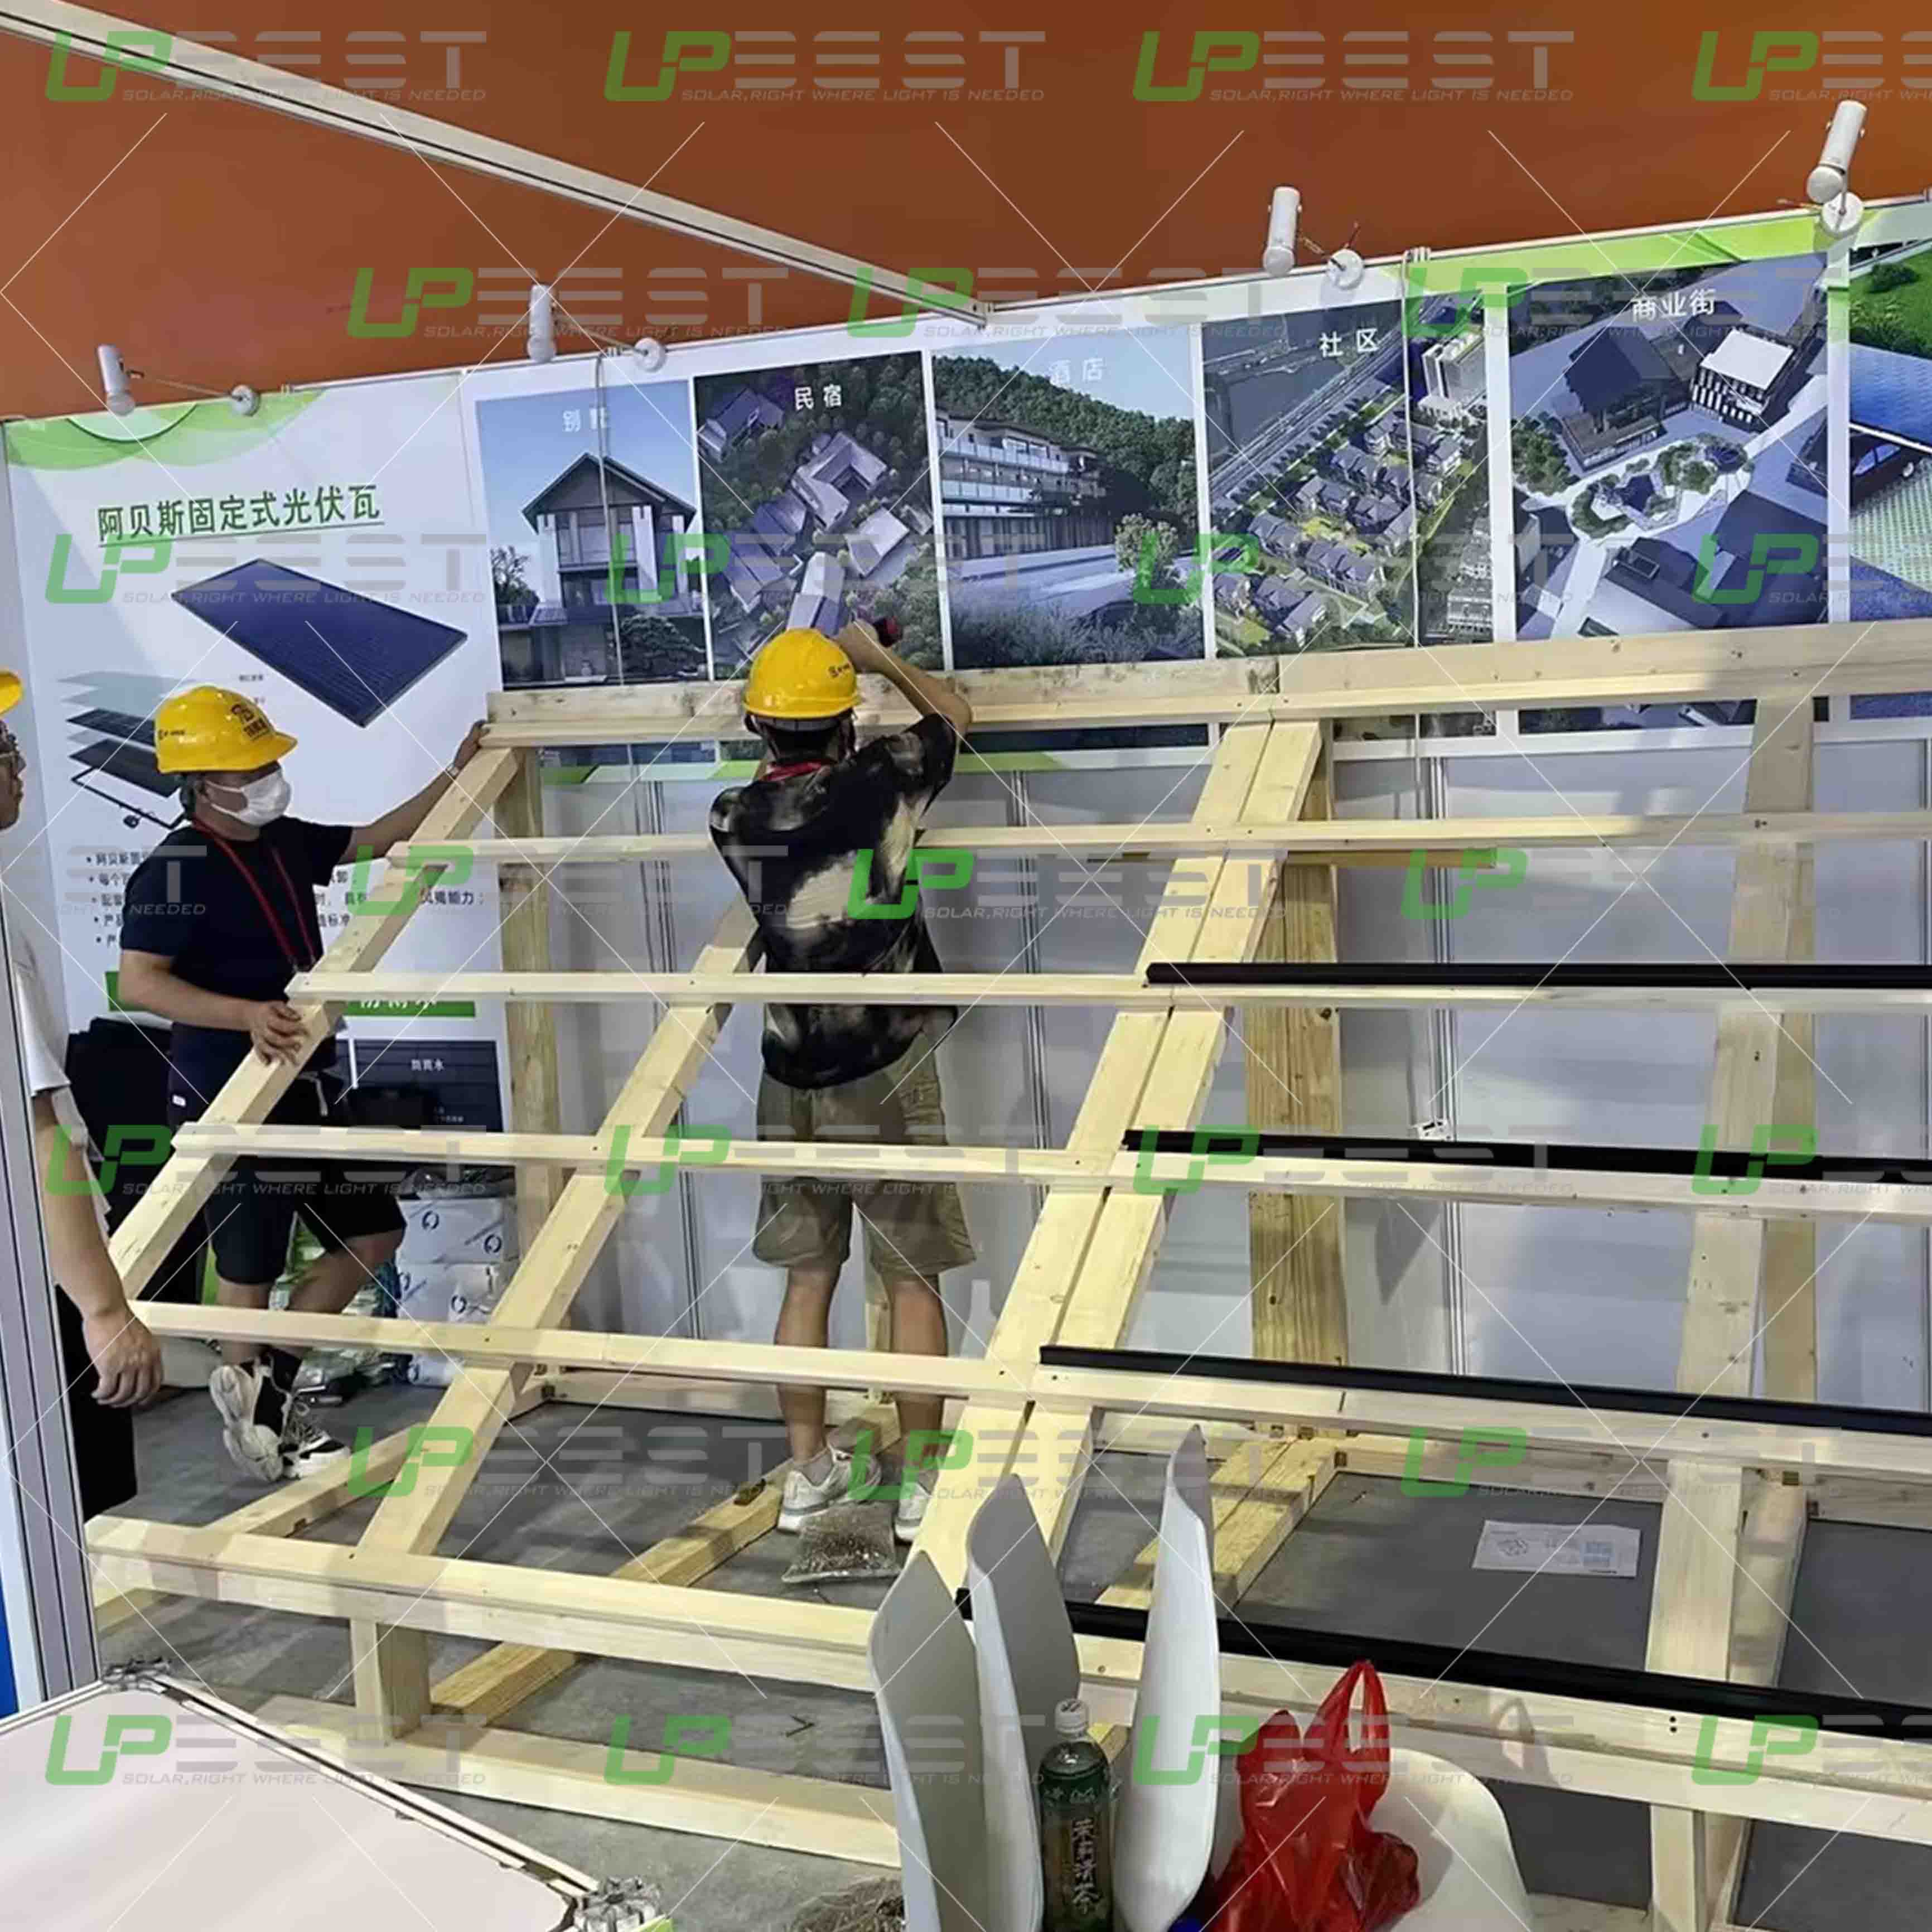 Upbest、第16回中国国際住宅産業・建築産業化総合博覧会で最先端のBIPVパネルを展示